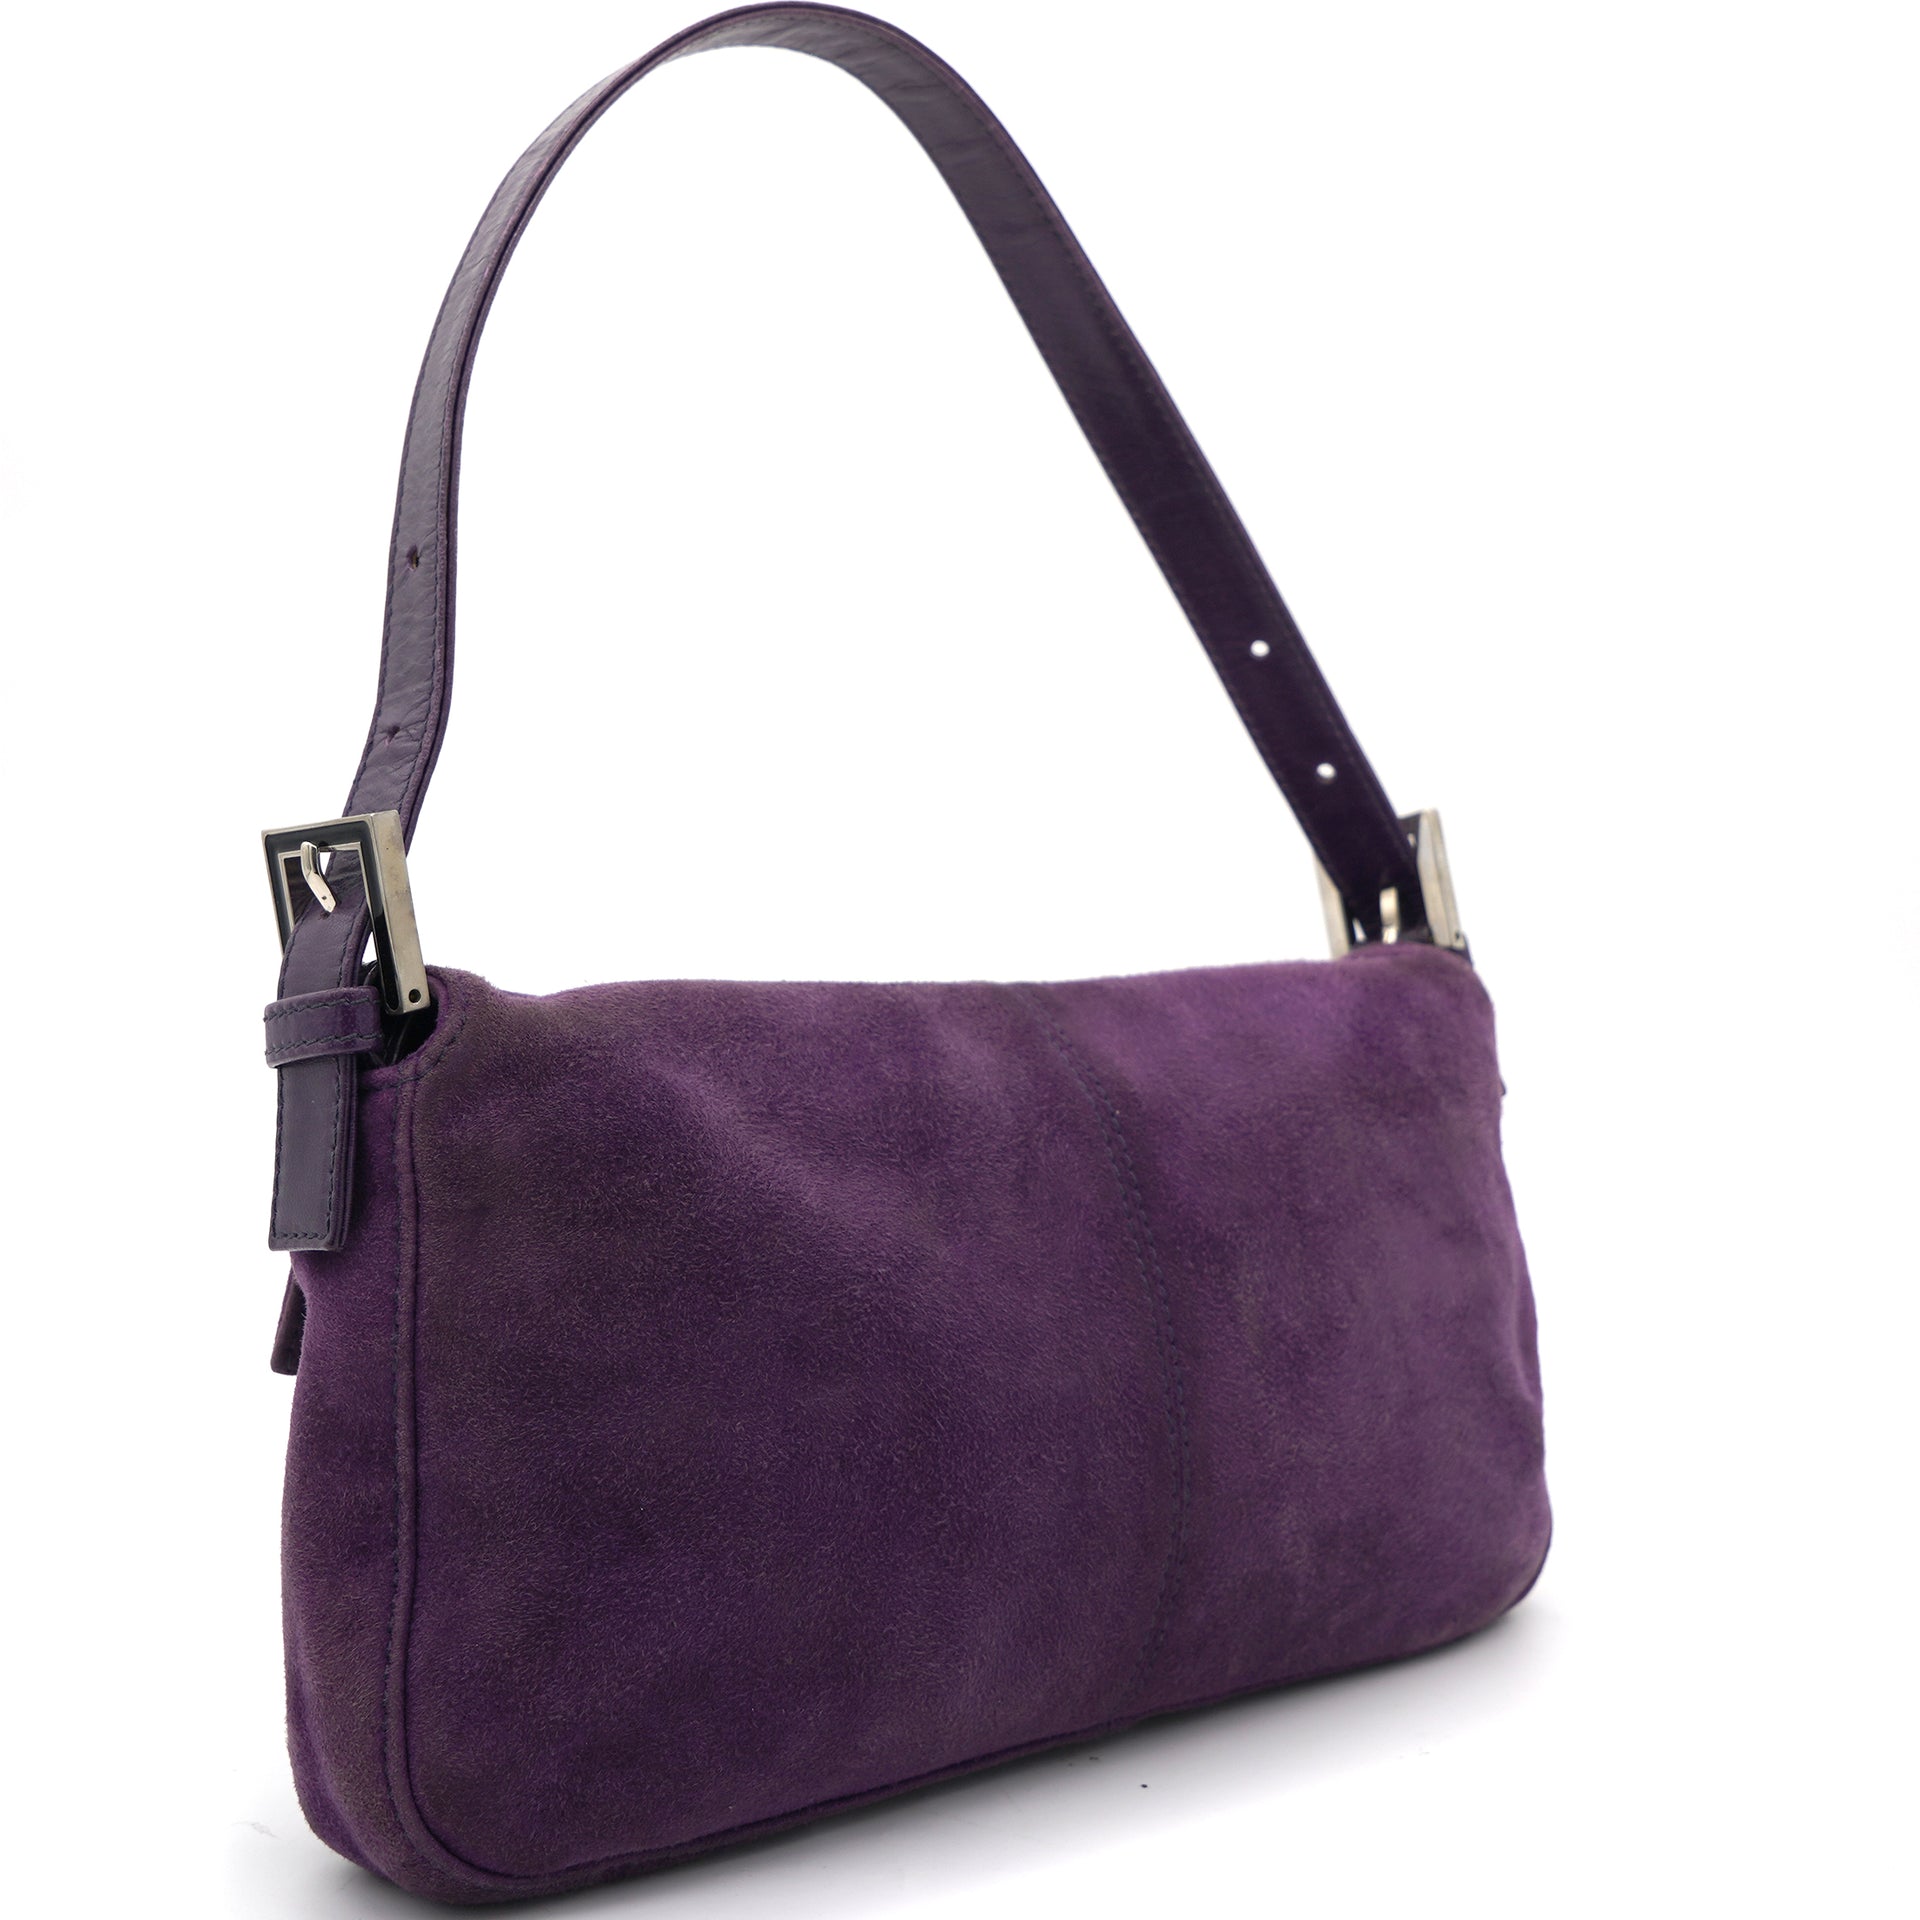 Fendi Baguette Leather Shoulder Bag in Purple